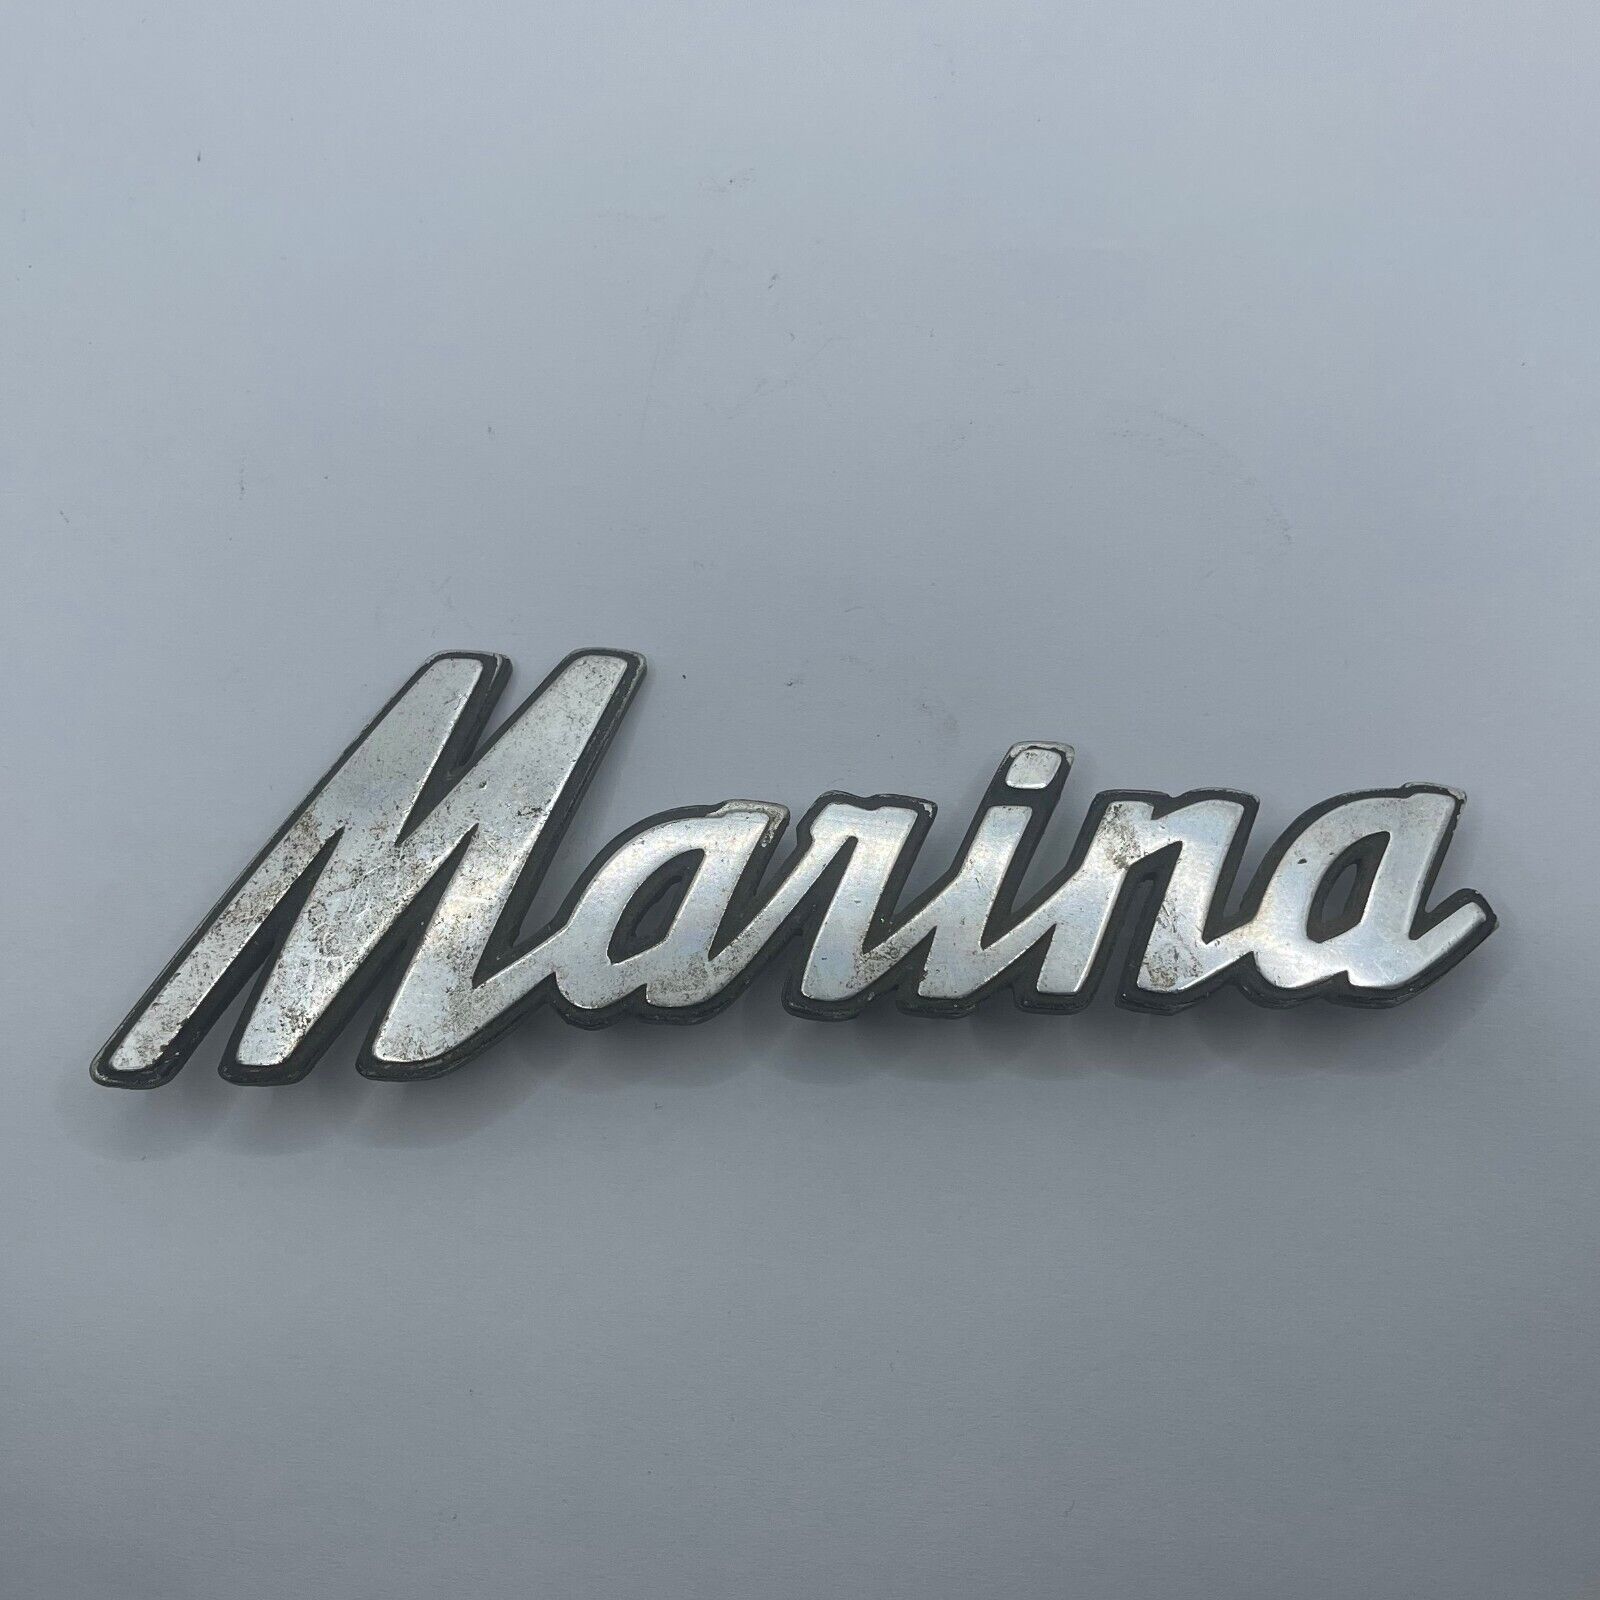 Morris Marina Original Car Emblem Badge Metal OEM